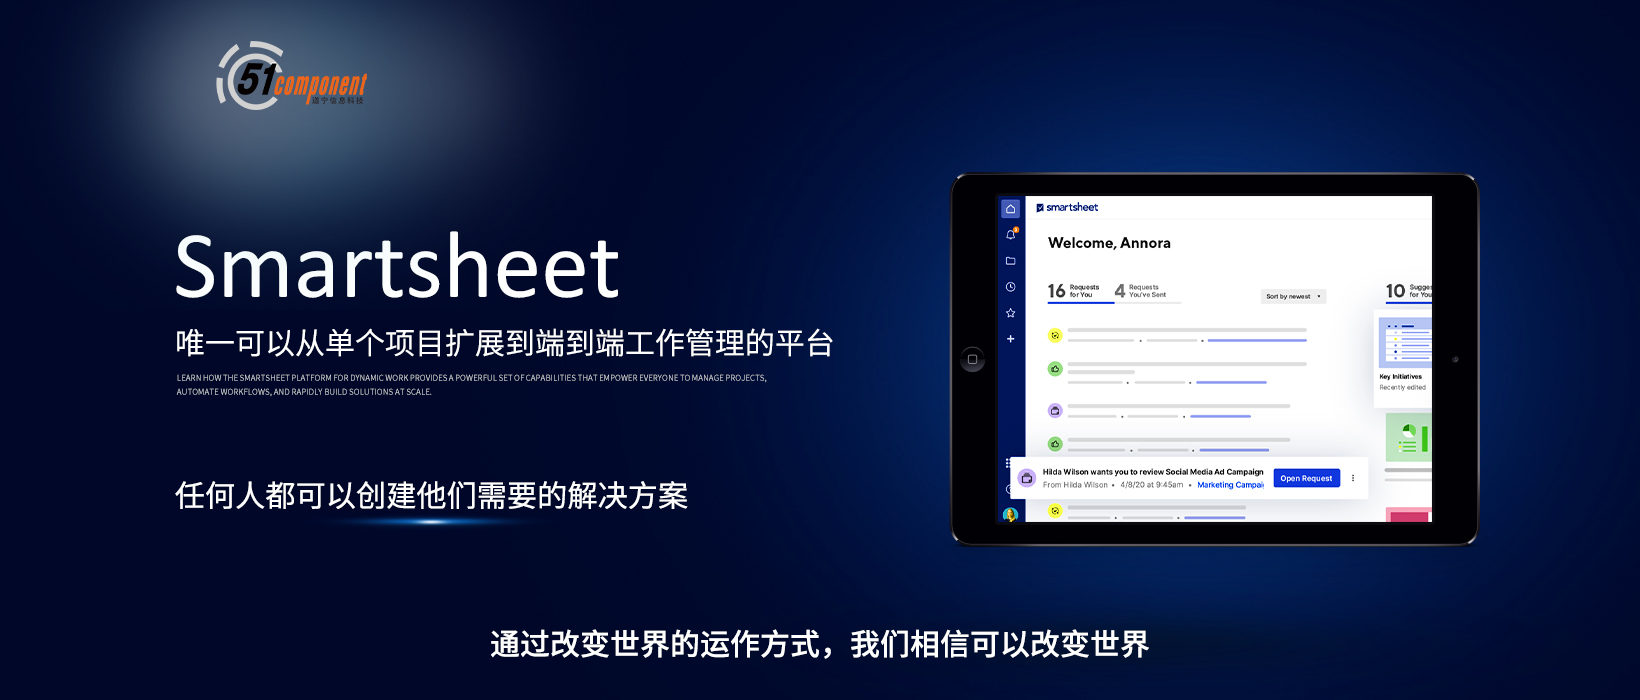 上海道宁联合Smartsheet，为企业带来全球先进的基于表格的无代码智能协作平台